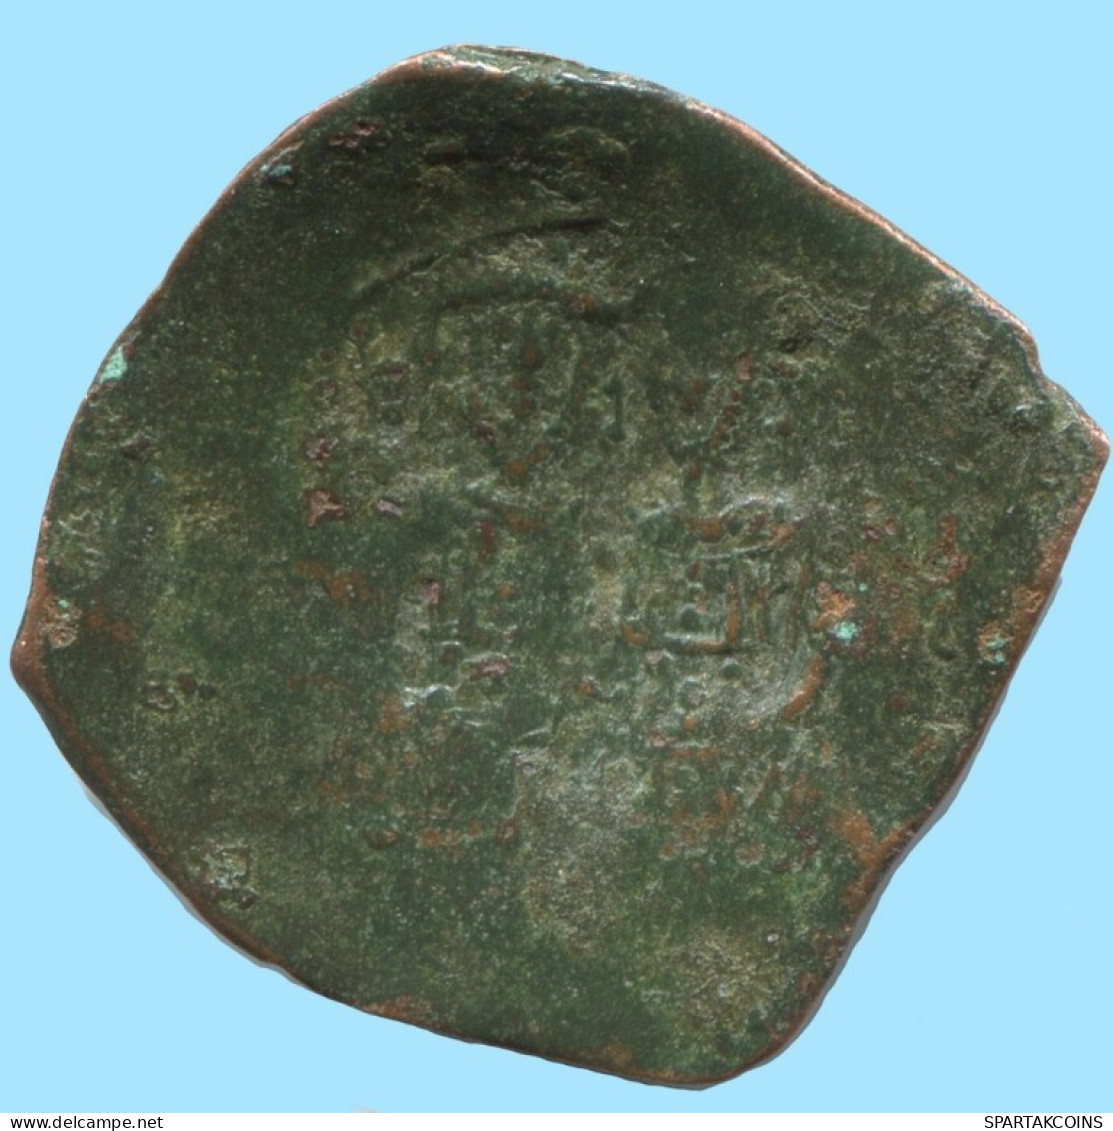 ALEXIOS III ANGELOS ASPRON TRACHY BILLON BYZANTINE Coin 2g/25mm #AB453.9.U.A - Byzantium